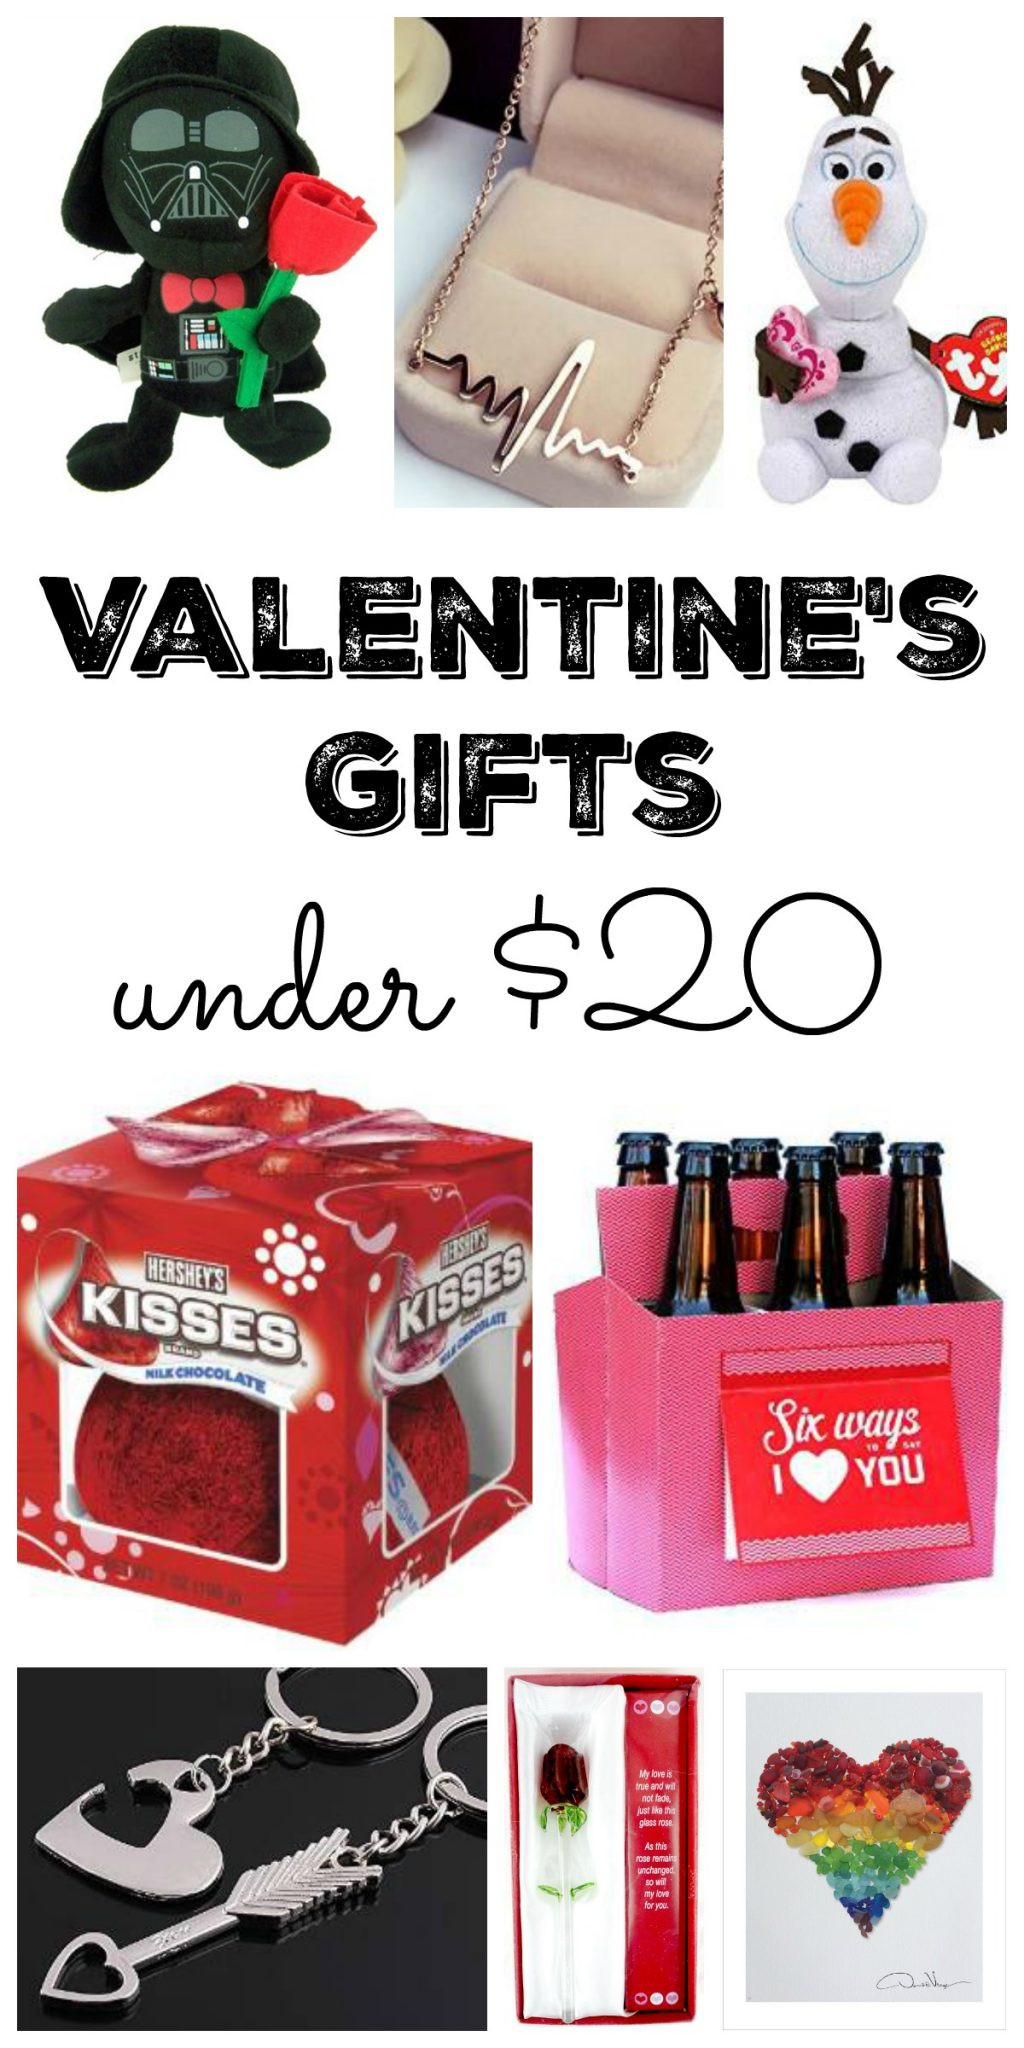 Valentine Gift Ideas Under $20
 Valentine s Gifts Under $20 The Country Chic Cottage